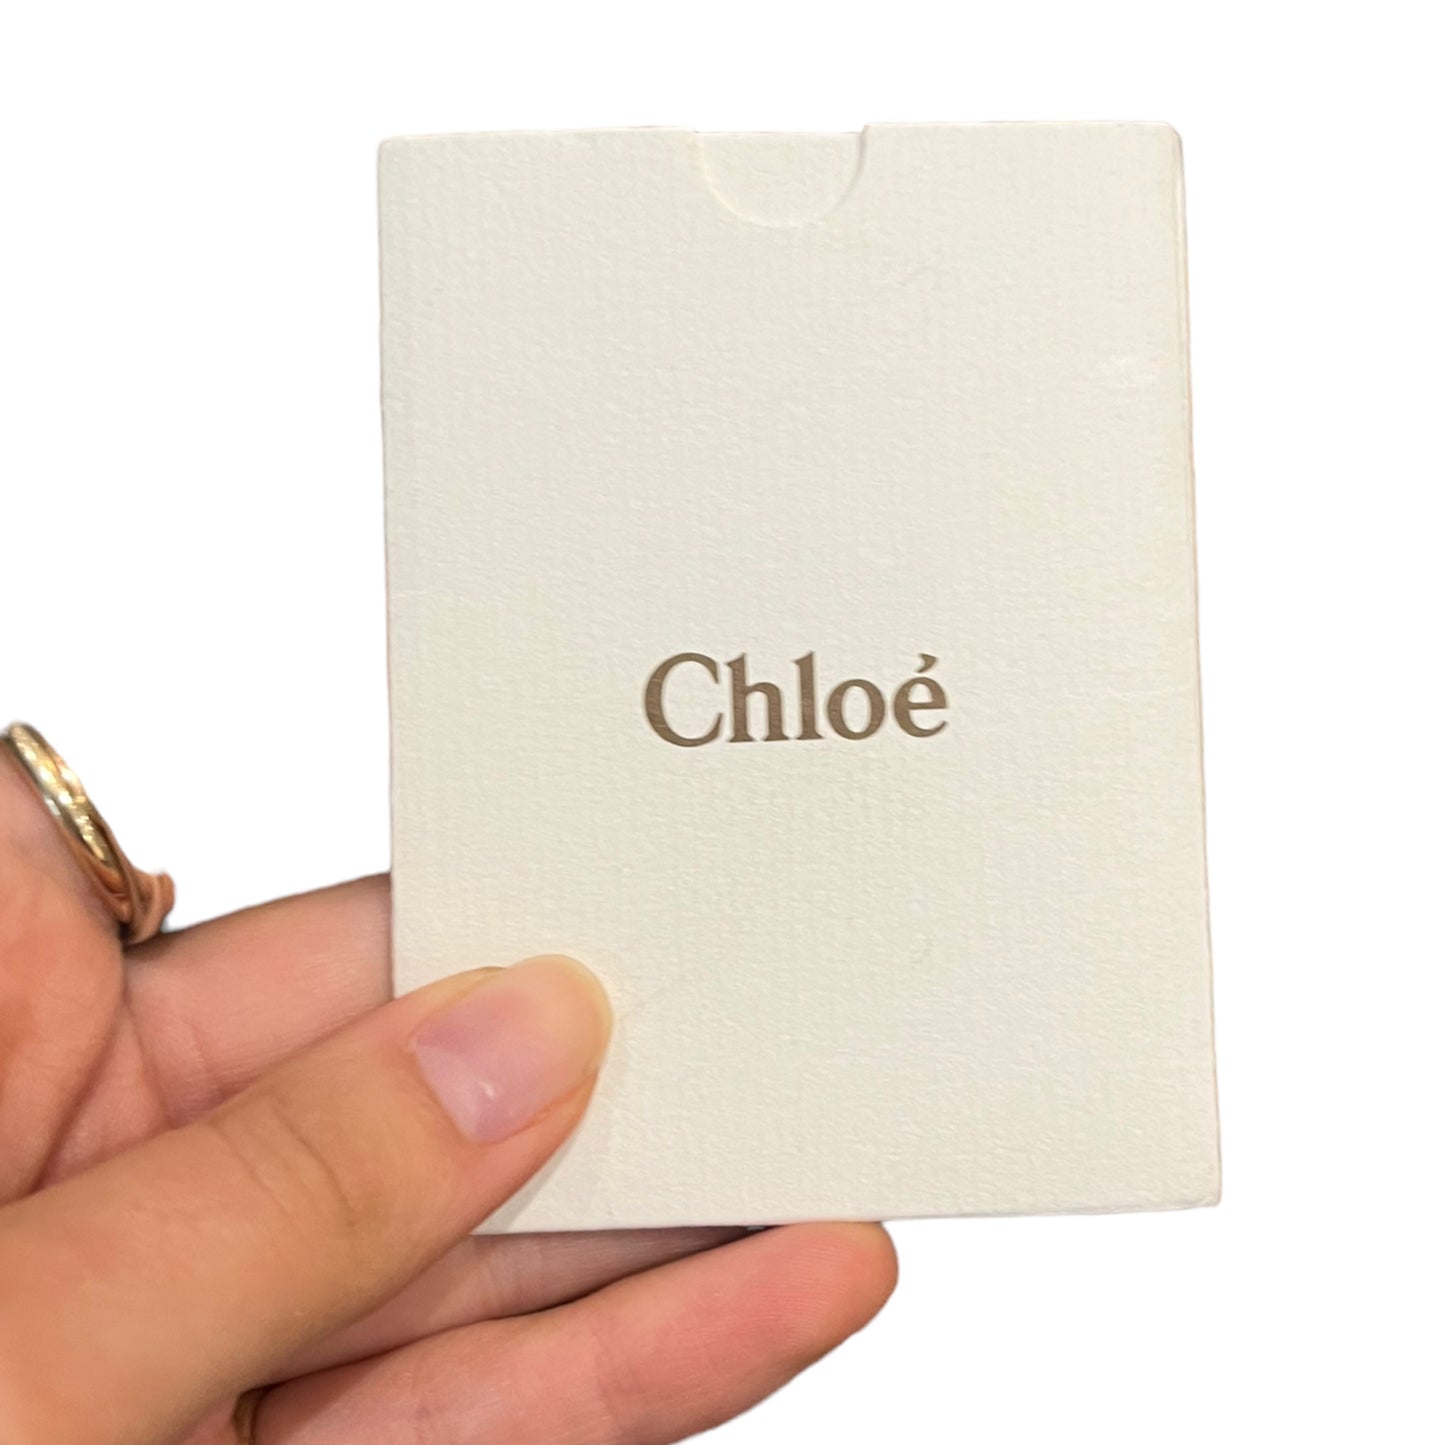 Chloe Tan Bag